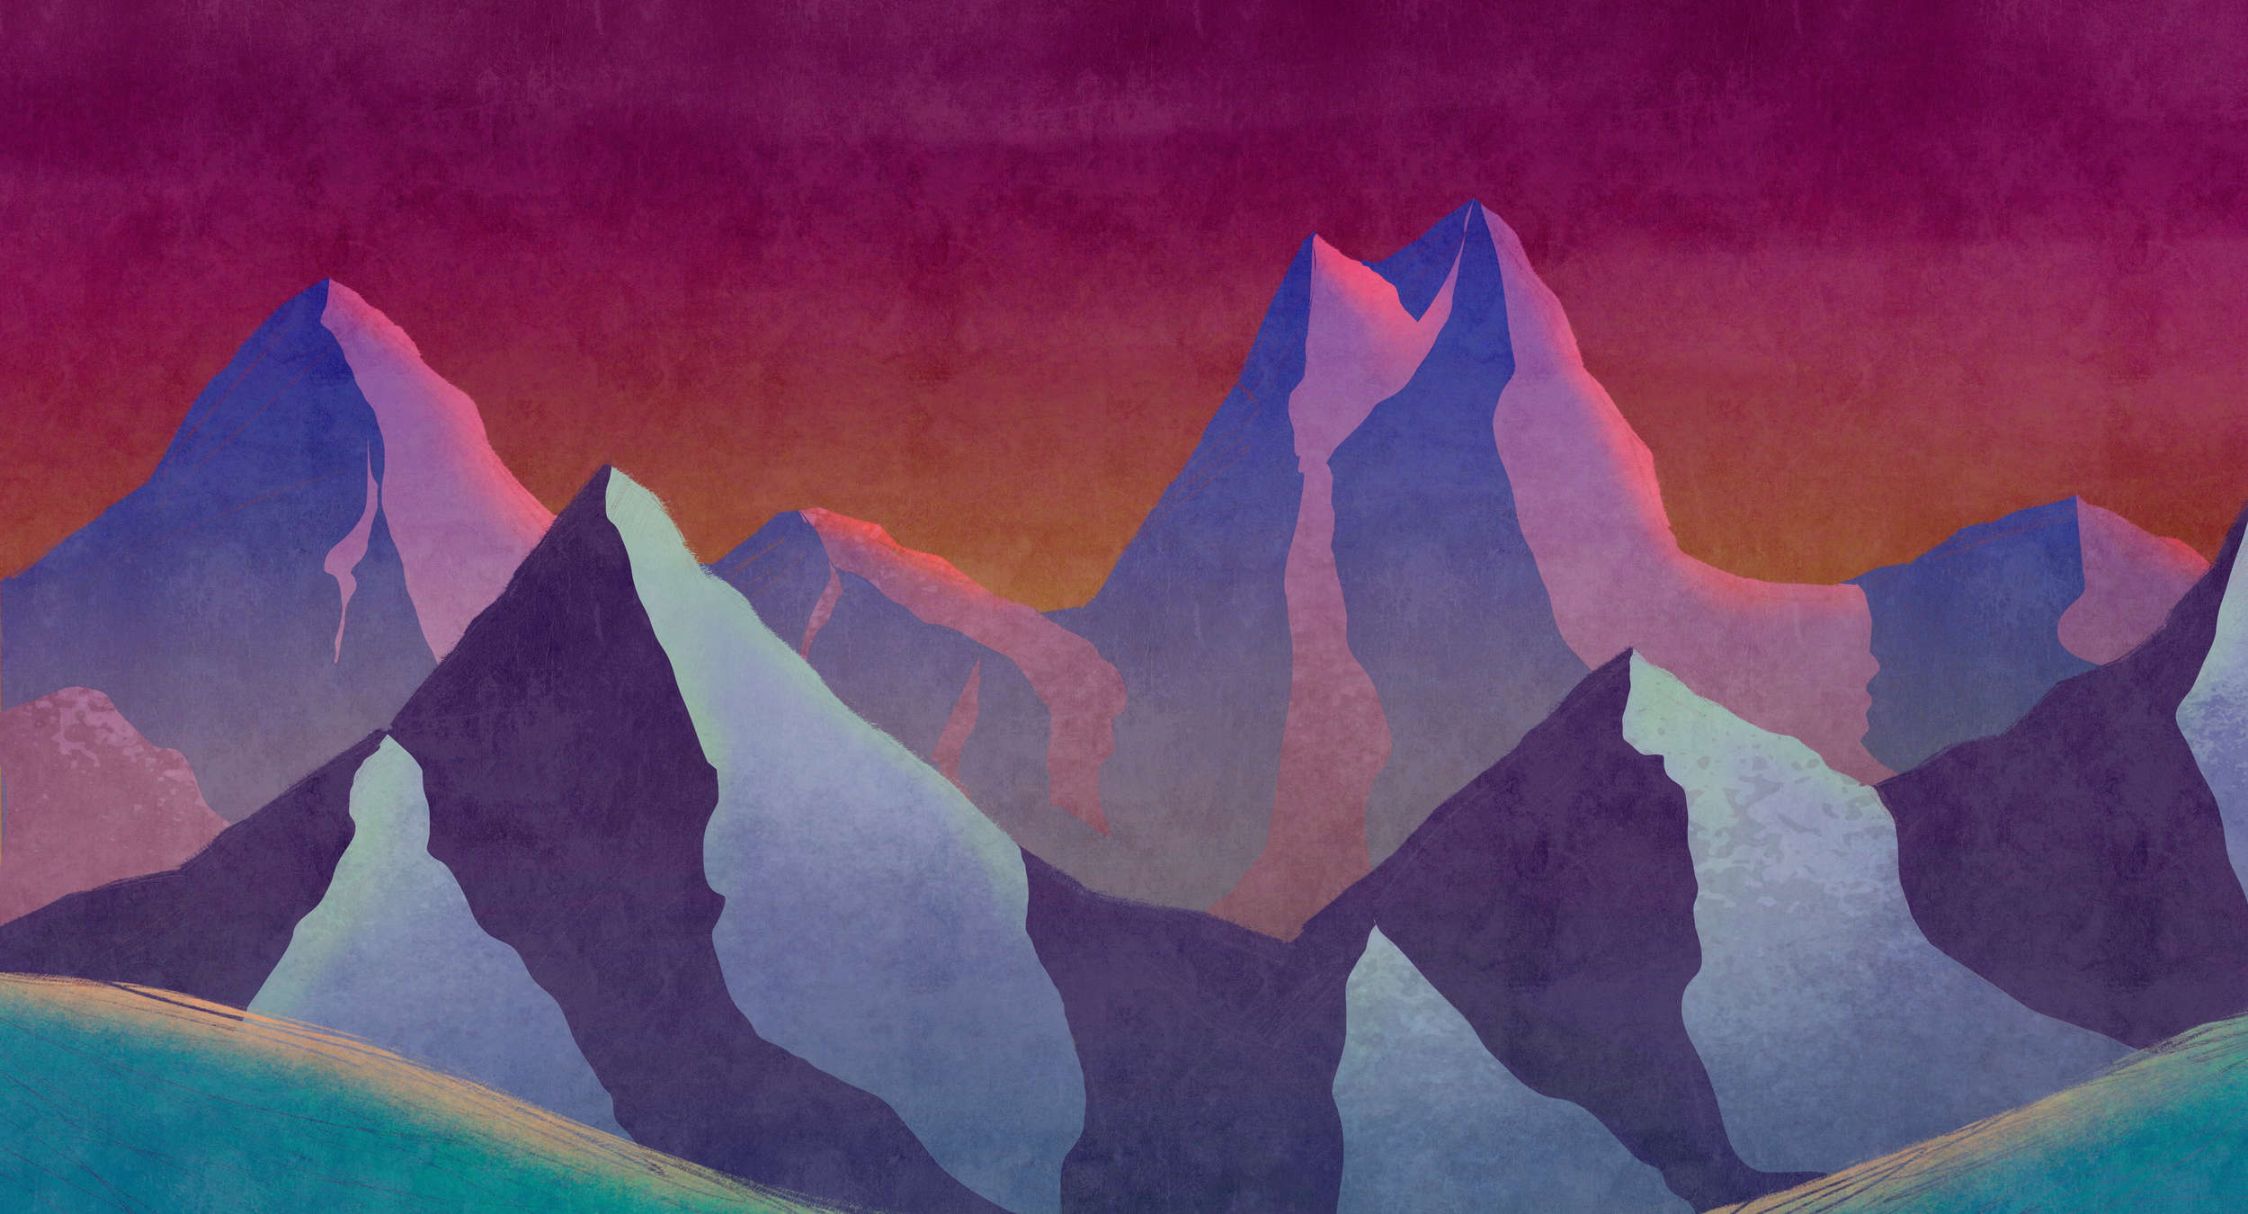             Digital behang »altitude 1« - Abstracte bergen in neonkleuren met vintage gipstextuur - Glad, licht parelend non-woven weefsel
        